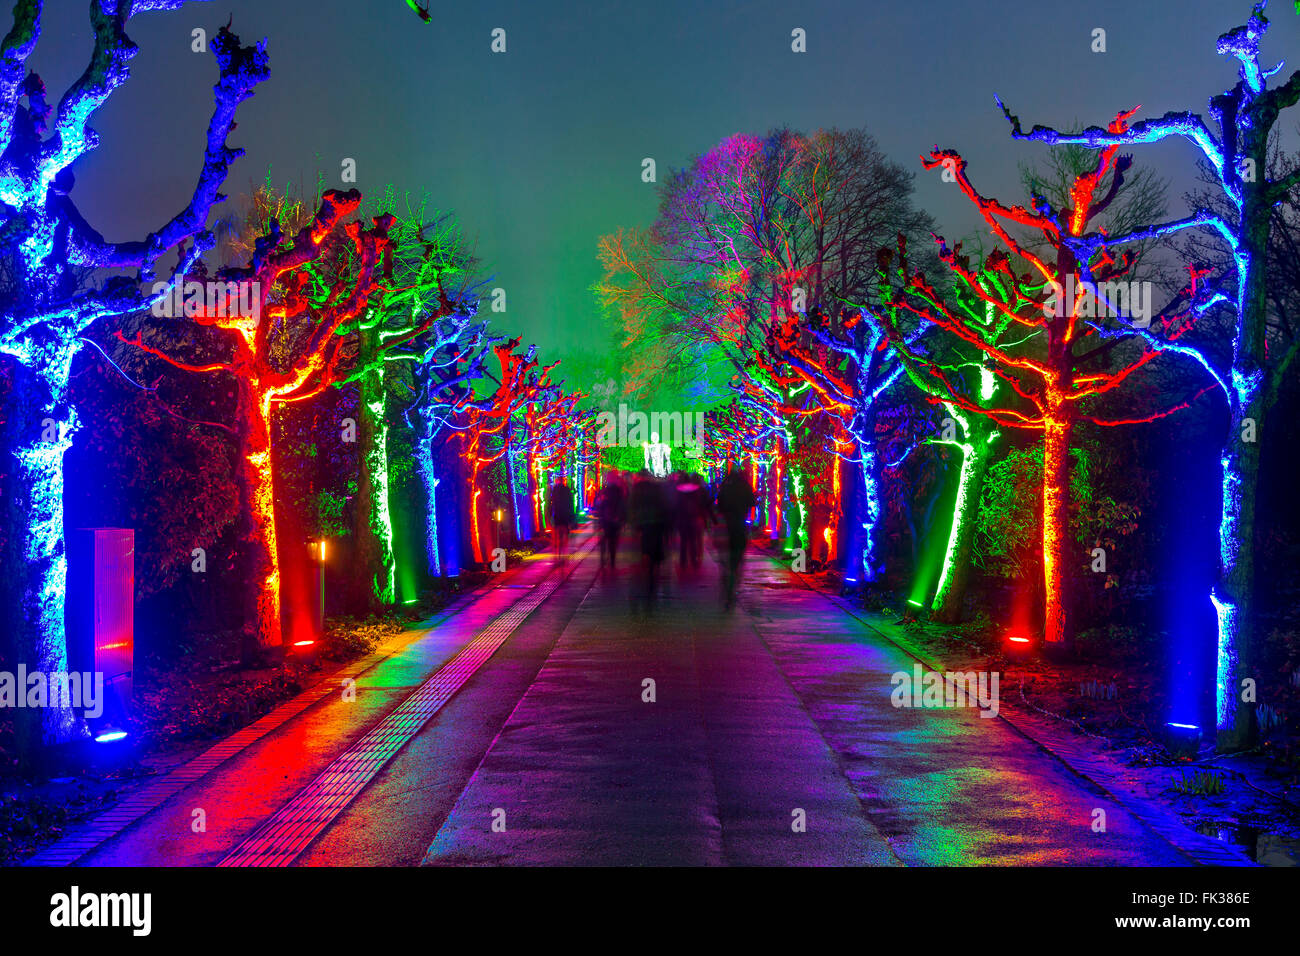 Park Leuchten, Park-Illumination, im Gruga-Park, einem öffentlichen Park in  Essen, Deutschland, jährliche Lichtshow im Park im Winter Stockfotografie -  Alamy